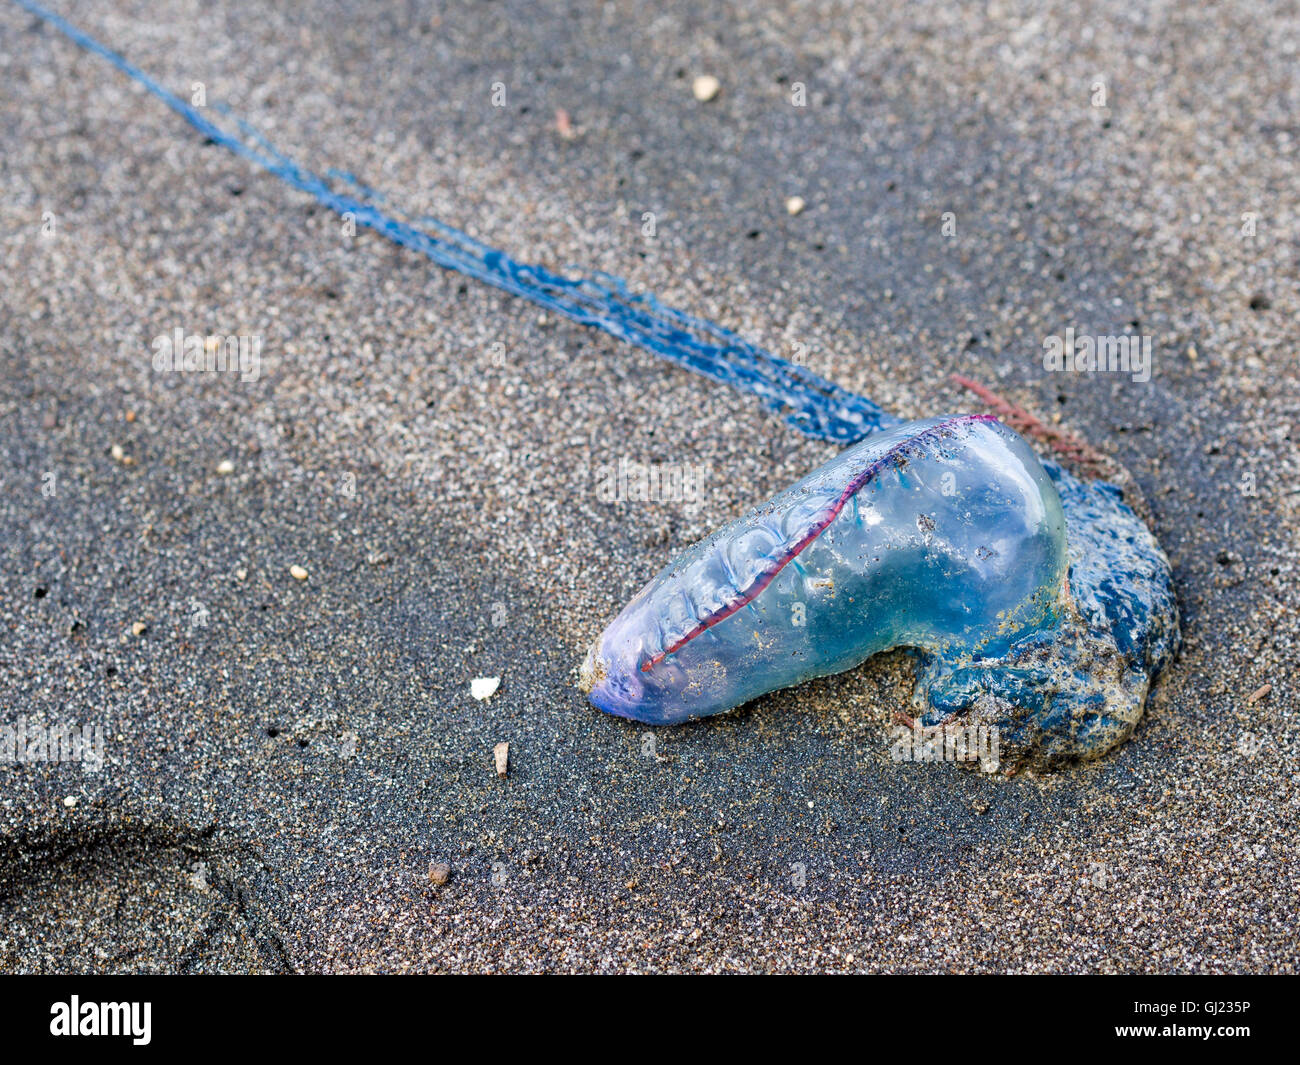 Kleine Mann o Krieg Quallen auf dem Sand. Eine kleine blaue und rote Qualle auf einem dunklen Sandstrand von der Flut angespült. Stockfoto